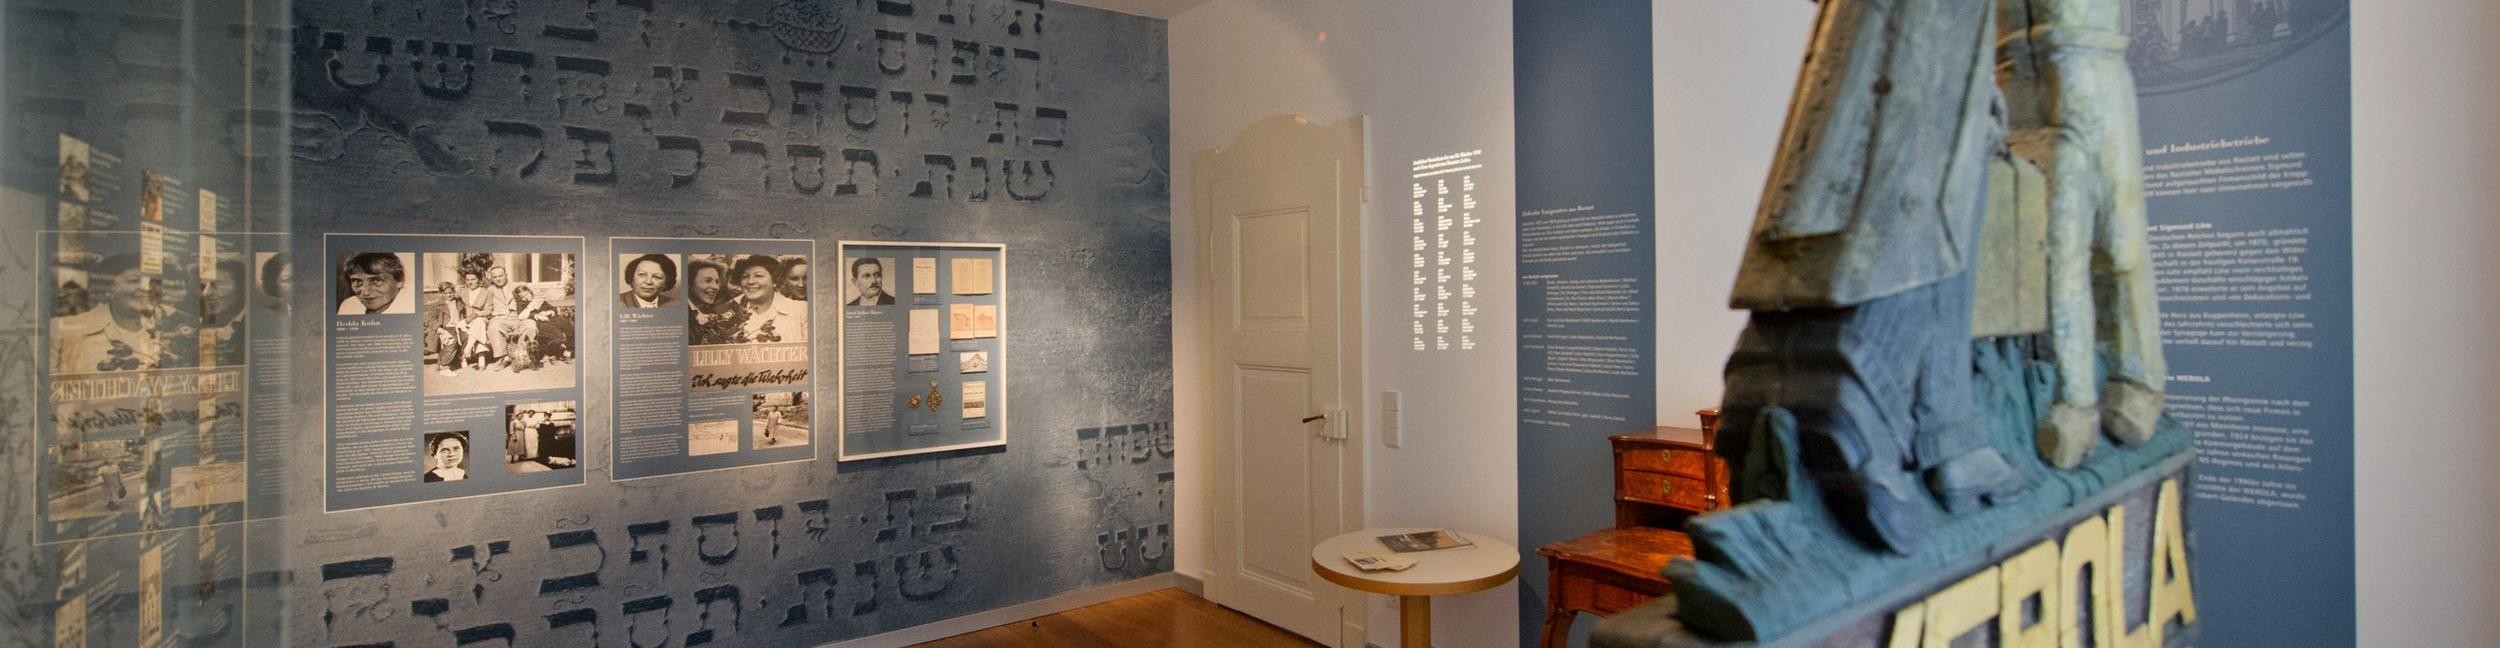 Blick in den Dokumentationsraum zur jüdischen Geschichte im Kantorenhaus Rastatt,